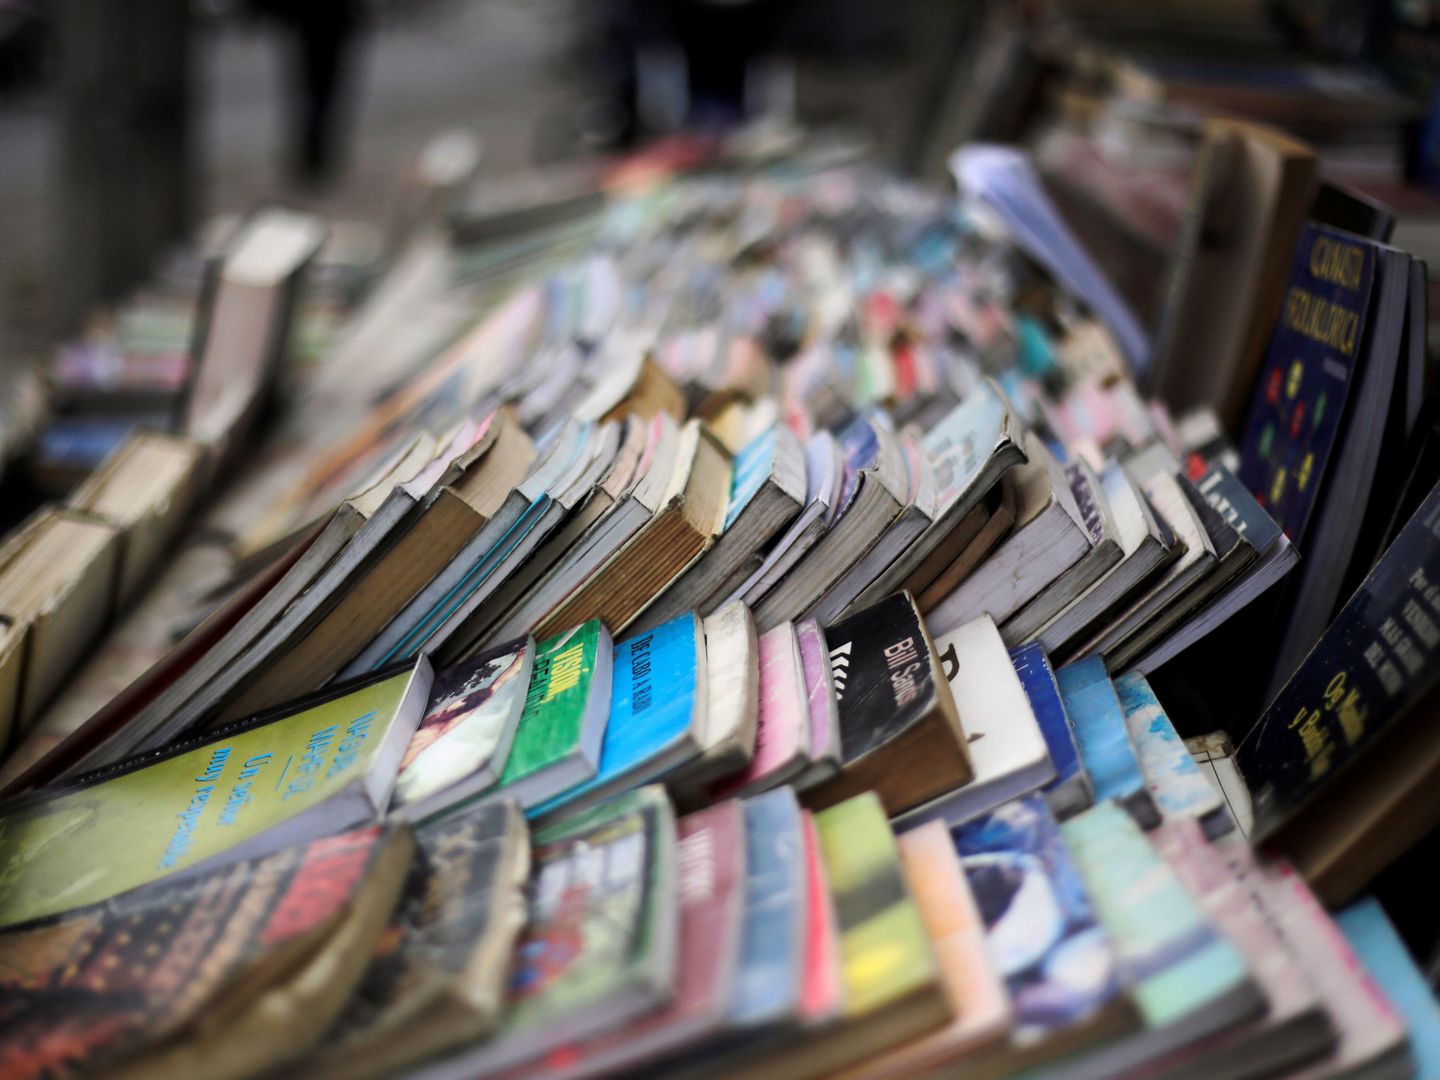 Libros de segunda mano en una librería callejera. (Reuters/Jorge Cabrera)